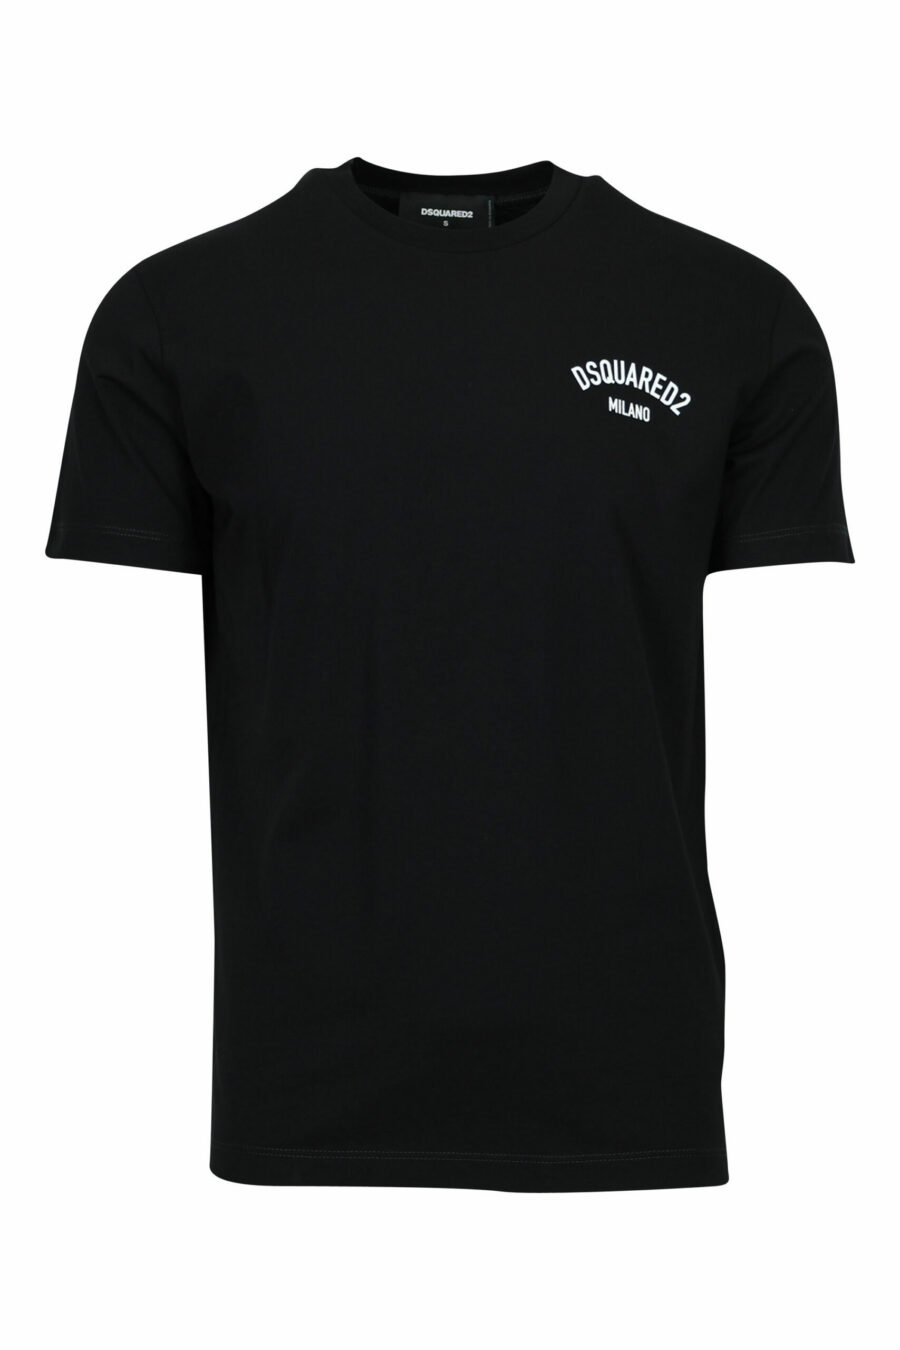 Black T-shirt with folded "milano" logo - 8054148571047 scaled